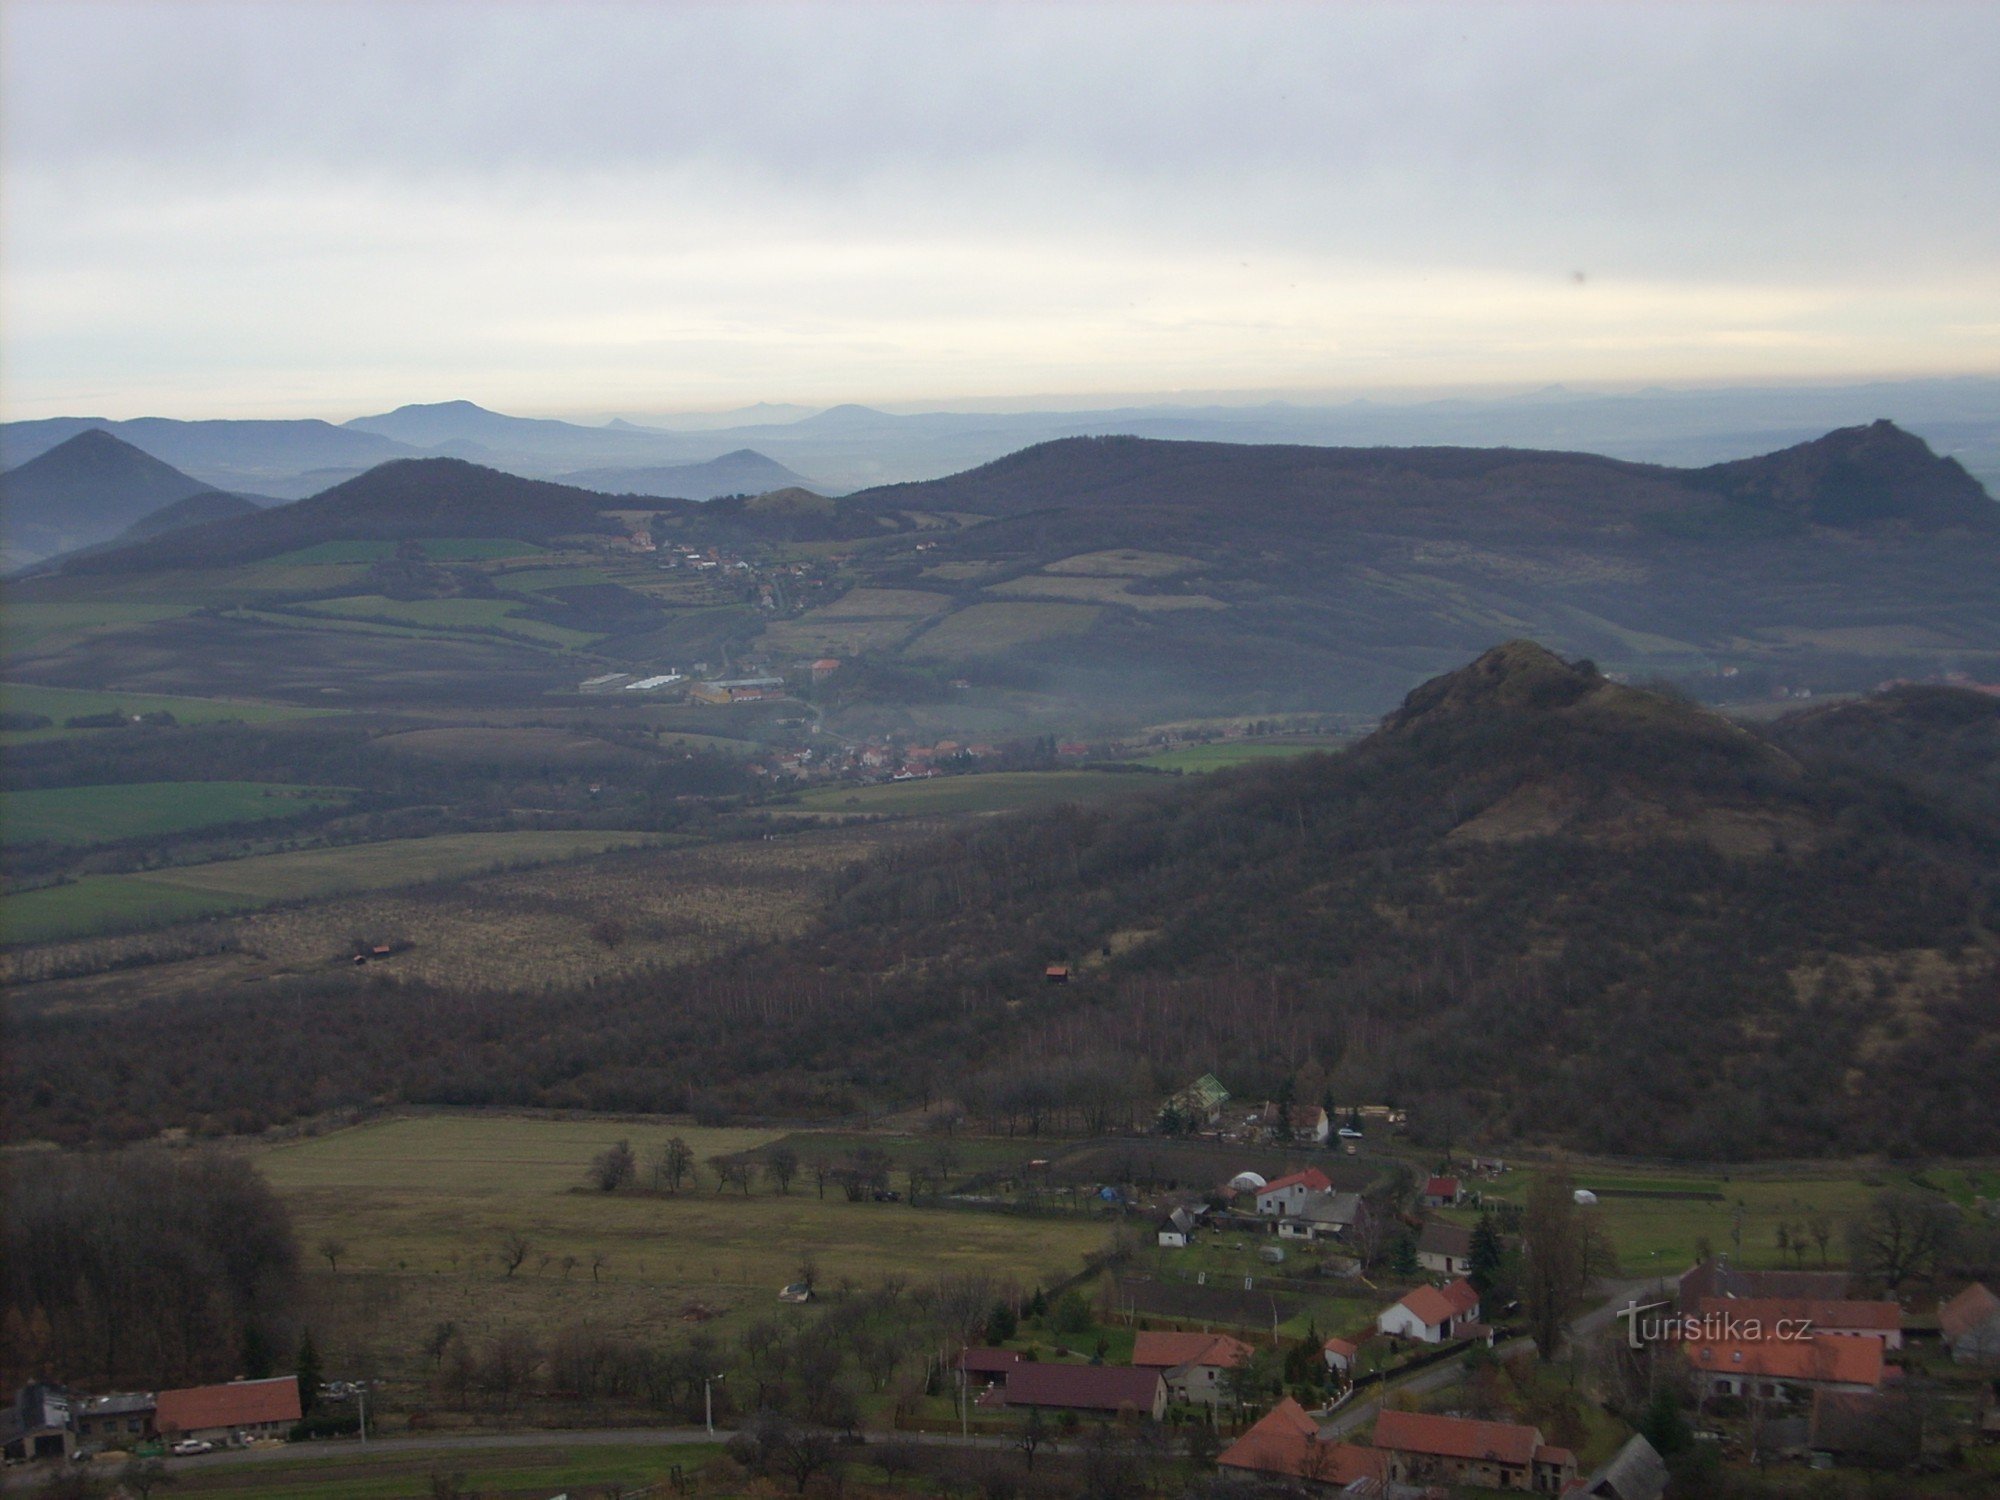 Άποψη των γύρω κορυφών του Český středohoří